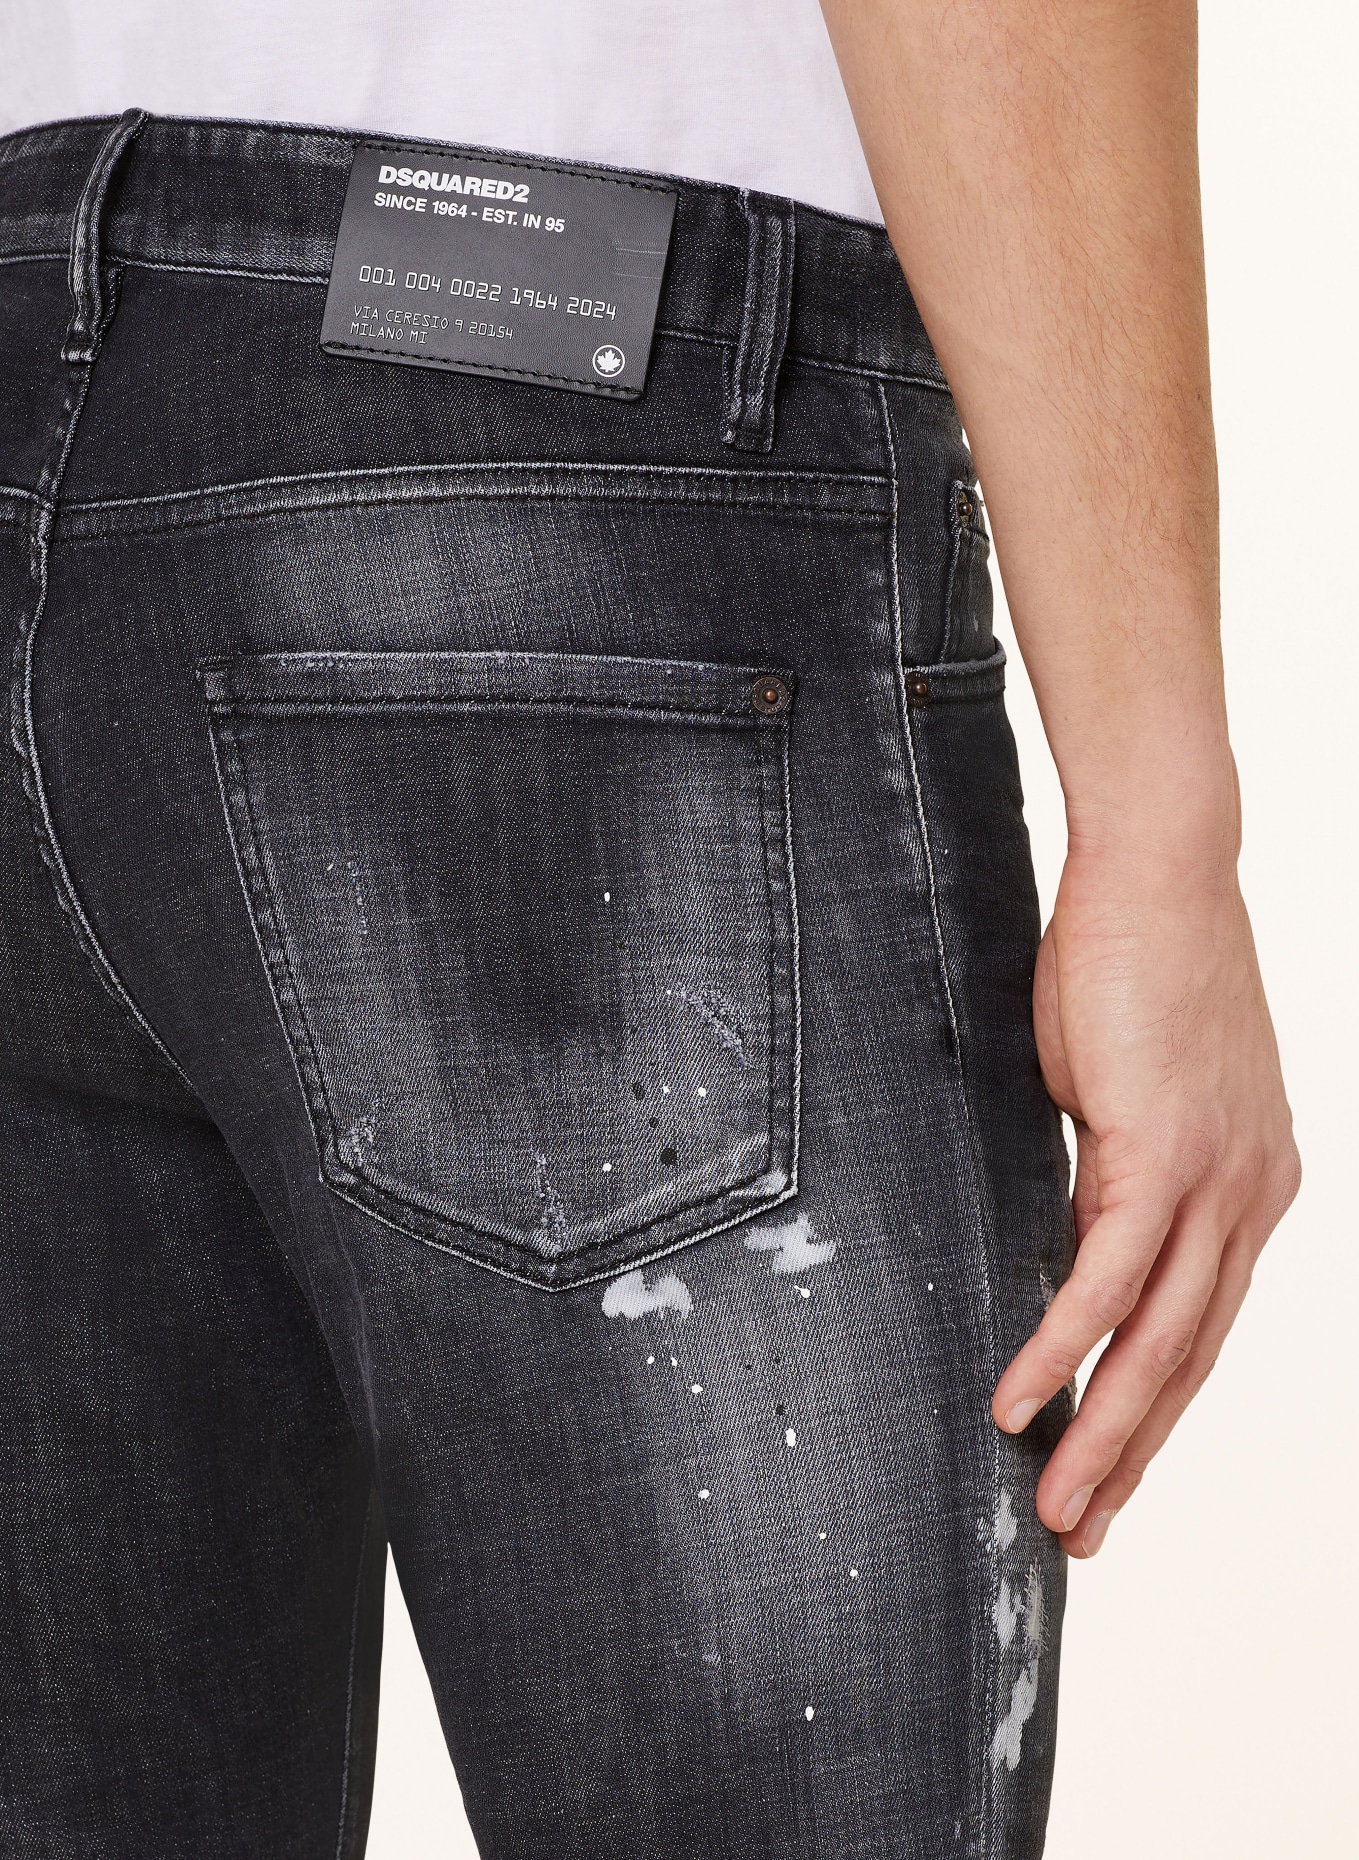 DSQUARED2 Destroyed jeans COOL GUY slim fit, Color: 900  black (Image 6)